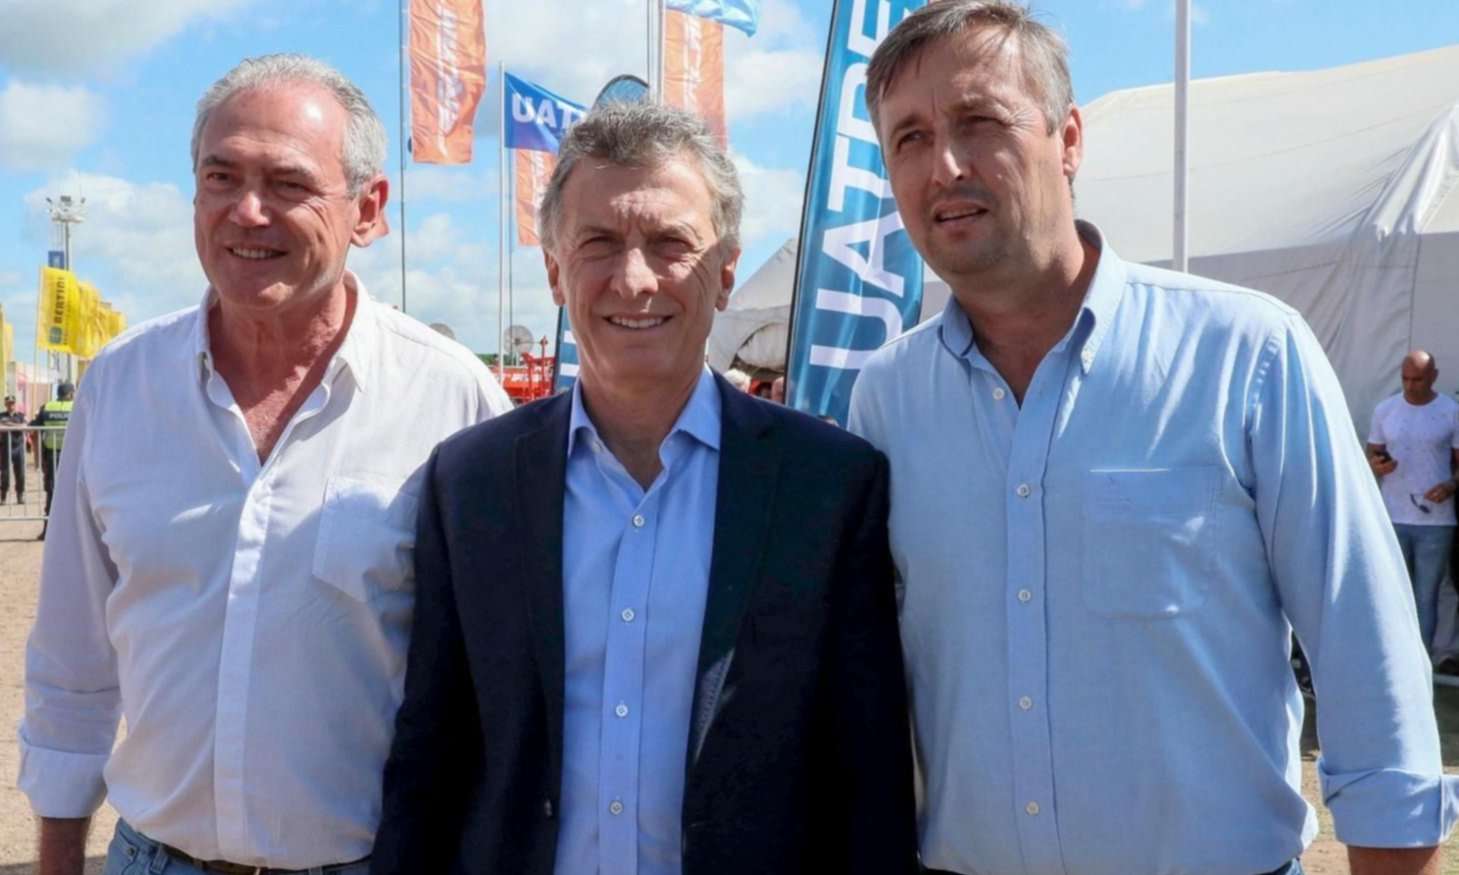 Macri viajará la semana que viene a Entre Ríos con su campaña presidencial "Sí se puede"